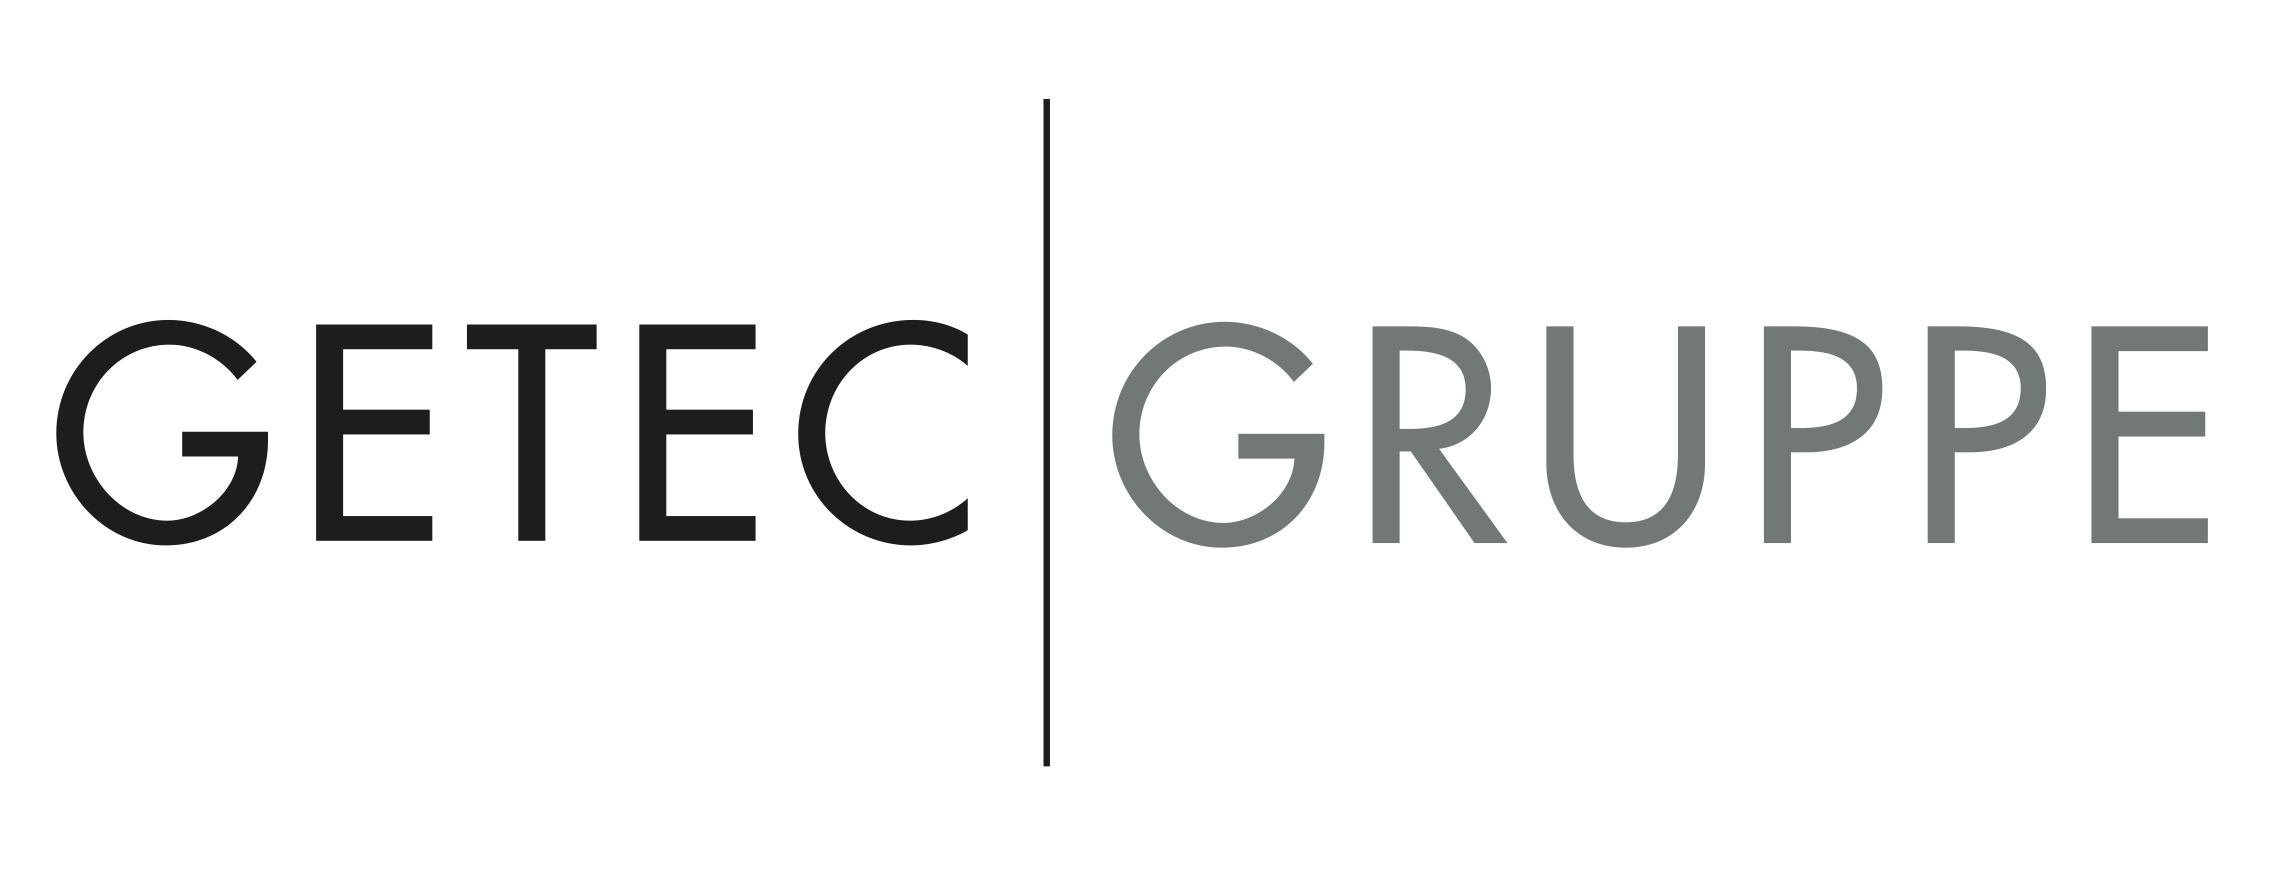 GETEC-Gruppe-logo